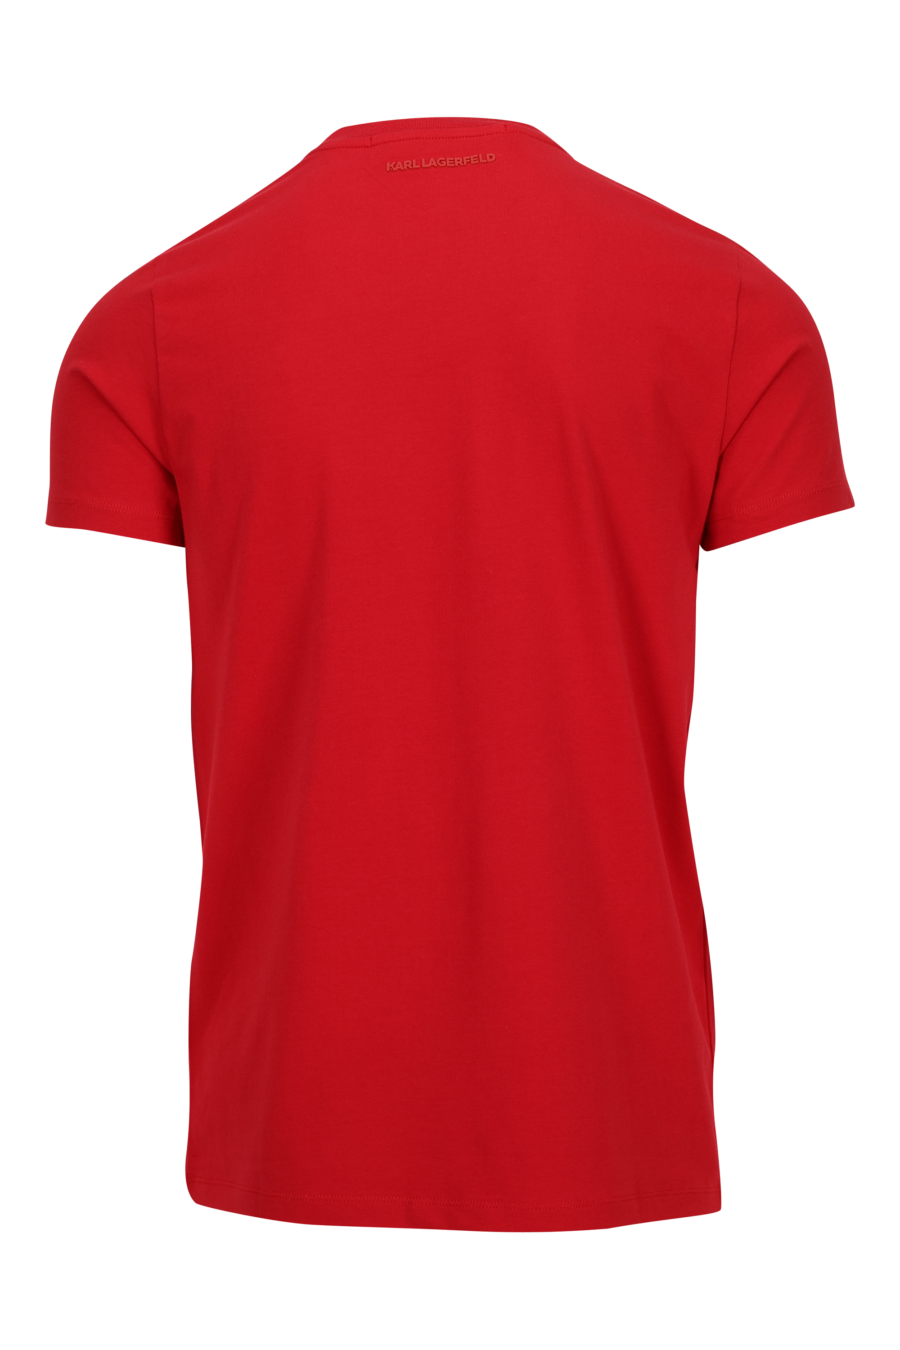 Camiseta roja con minilogo monocromático - 4062226789615 1